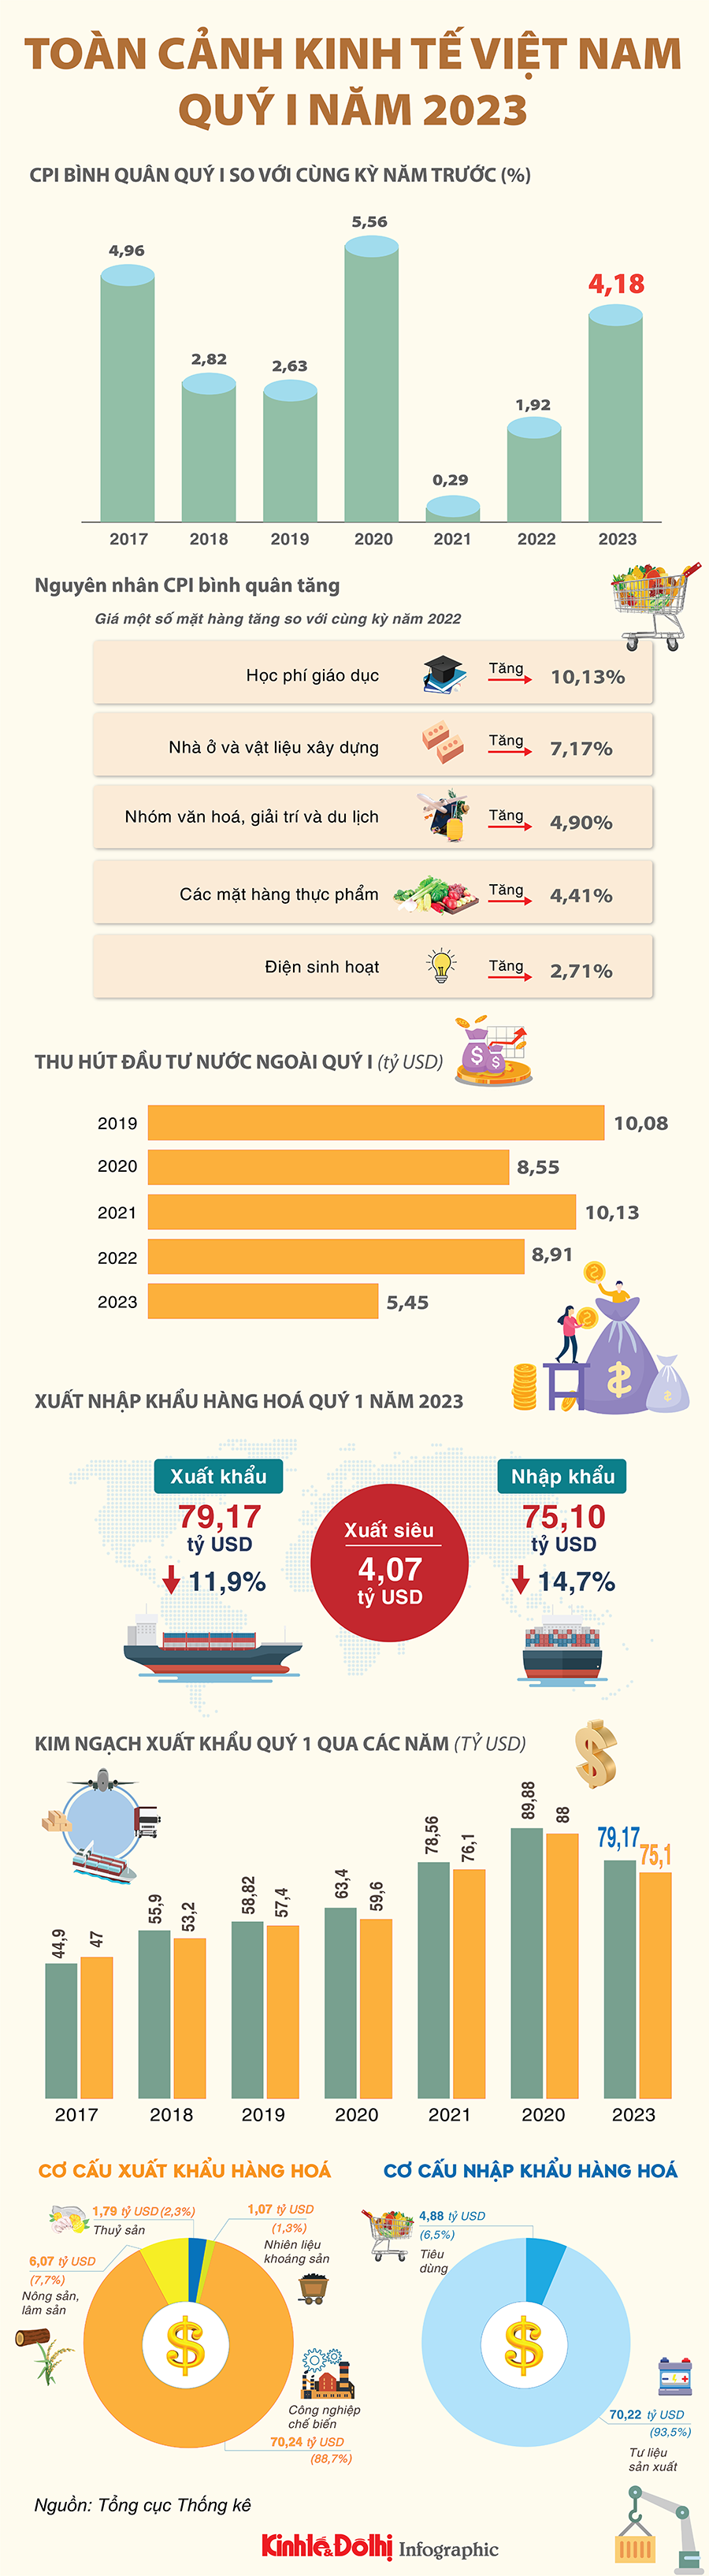 Toàn cảnh kinh tế Việt Nam quý I năm 2023